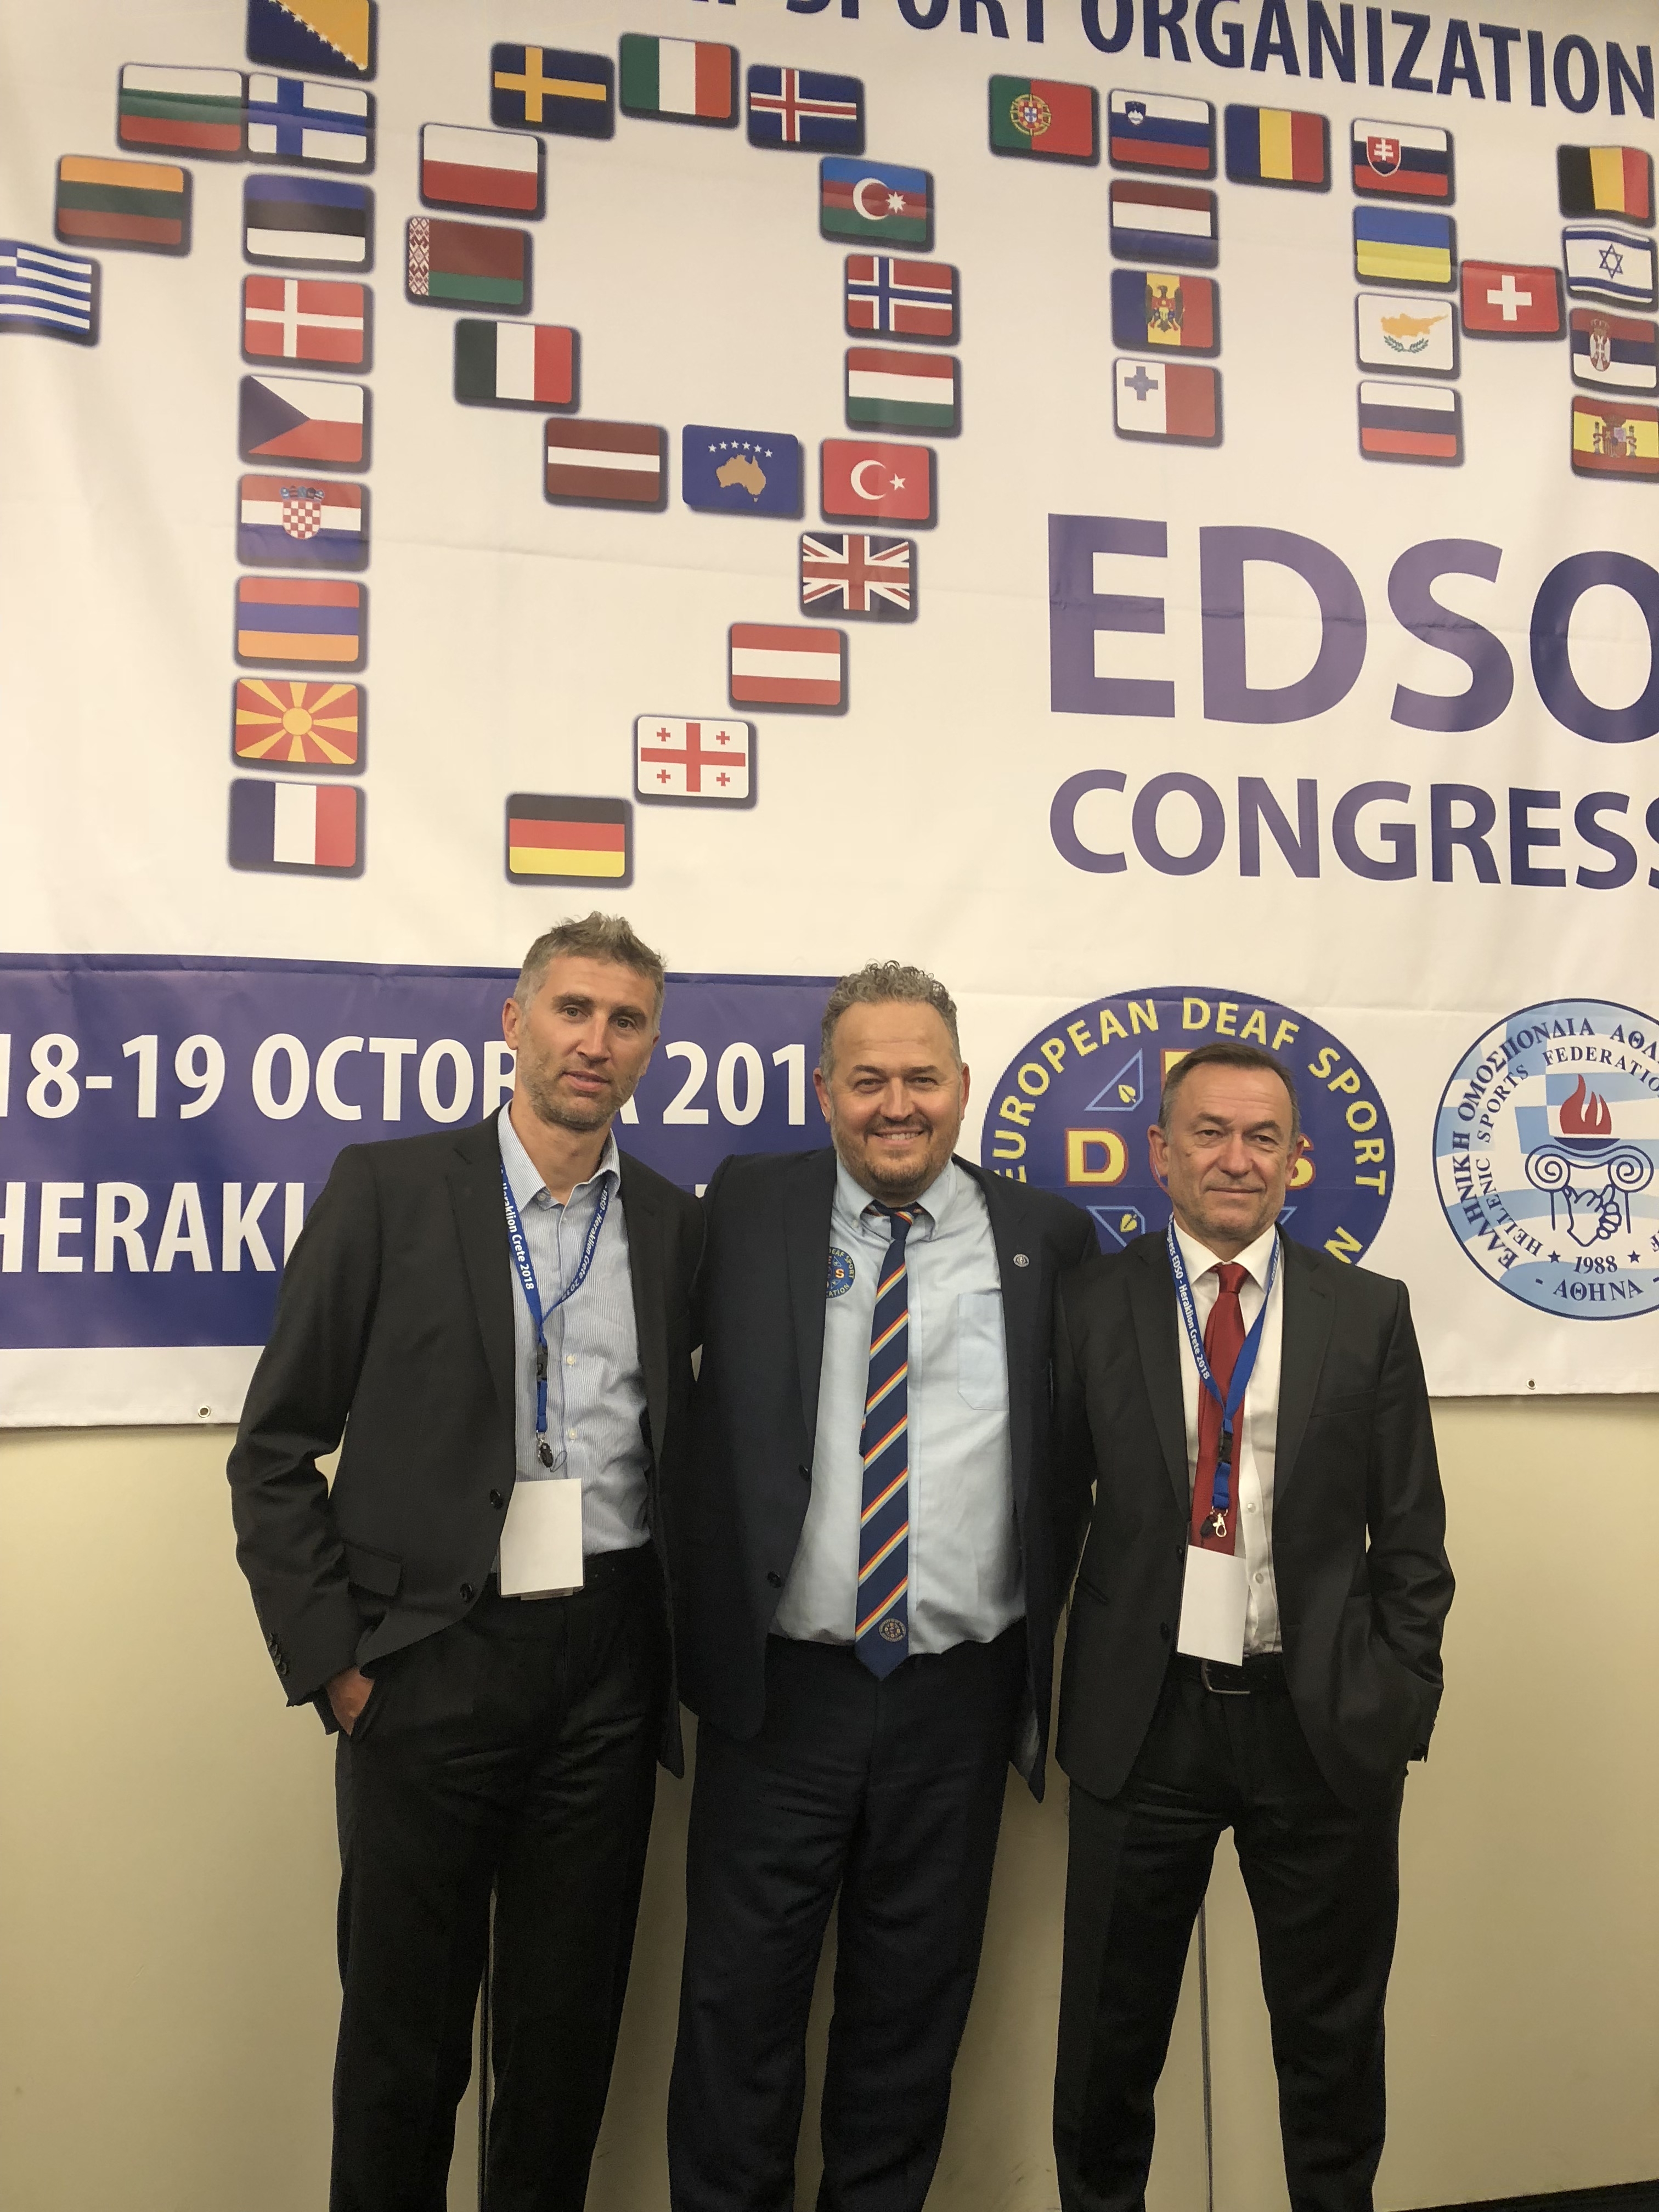 Naši delegáti s novým prezidentom EDSO -Josifom Stavrakakisom z Grécka